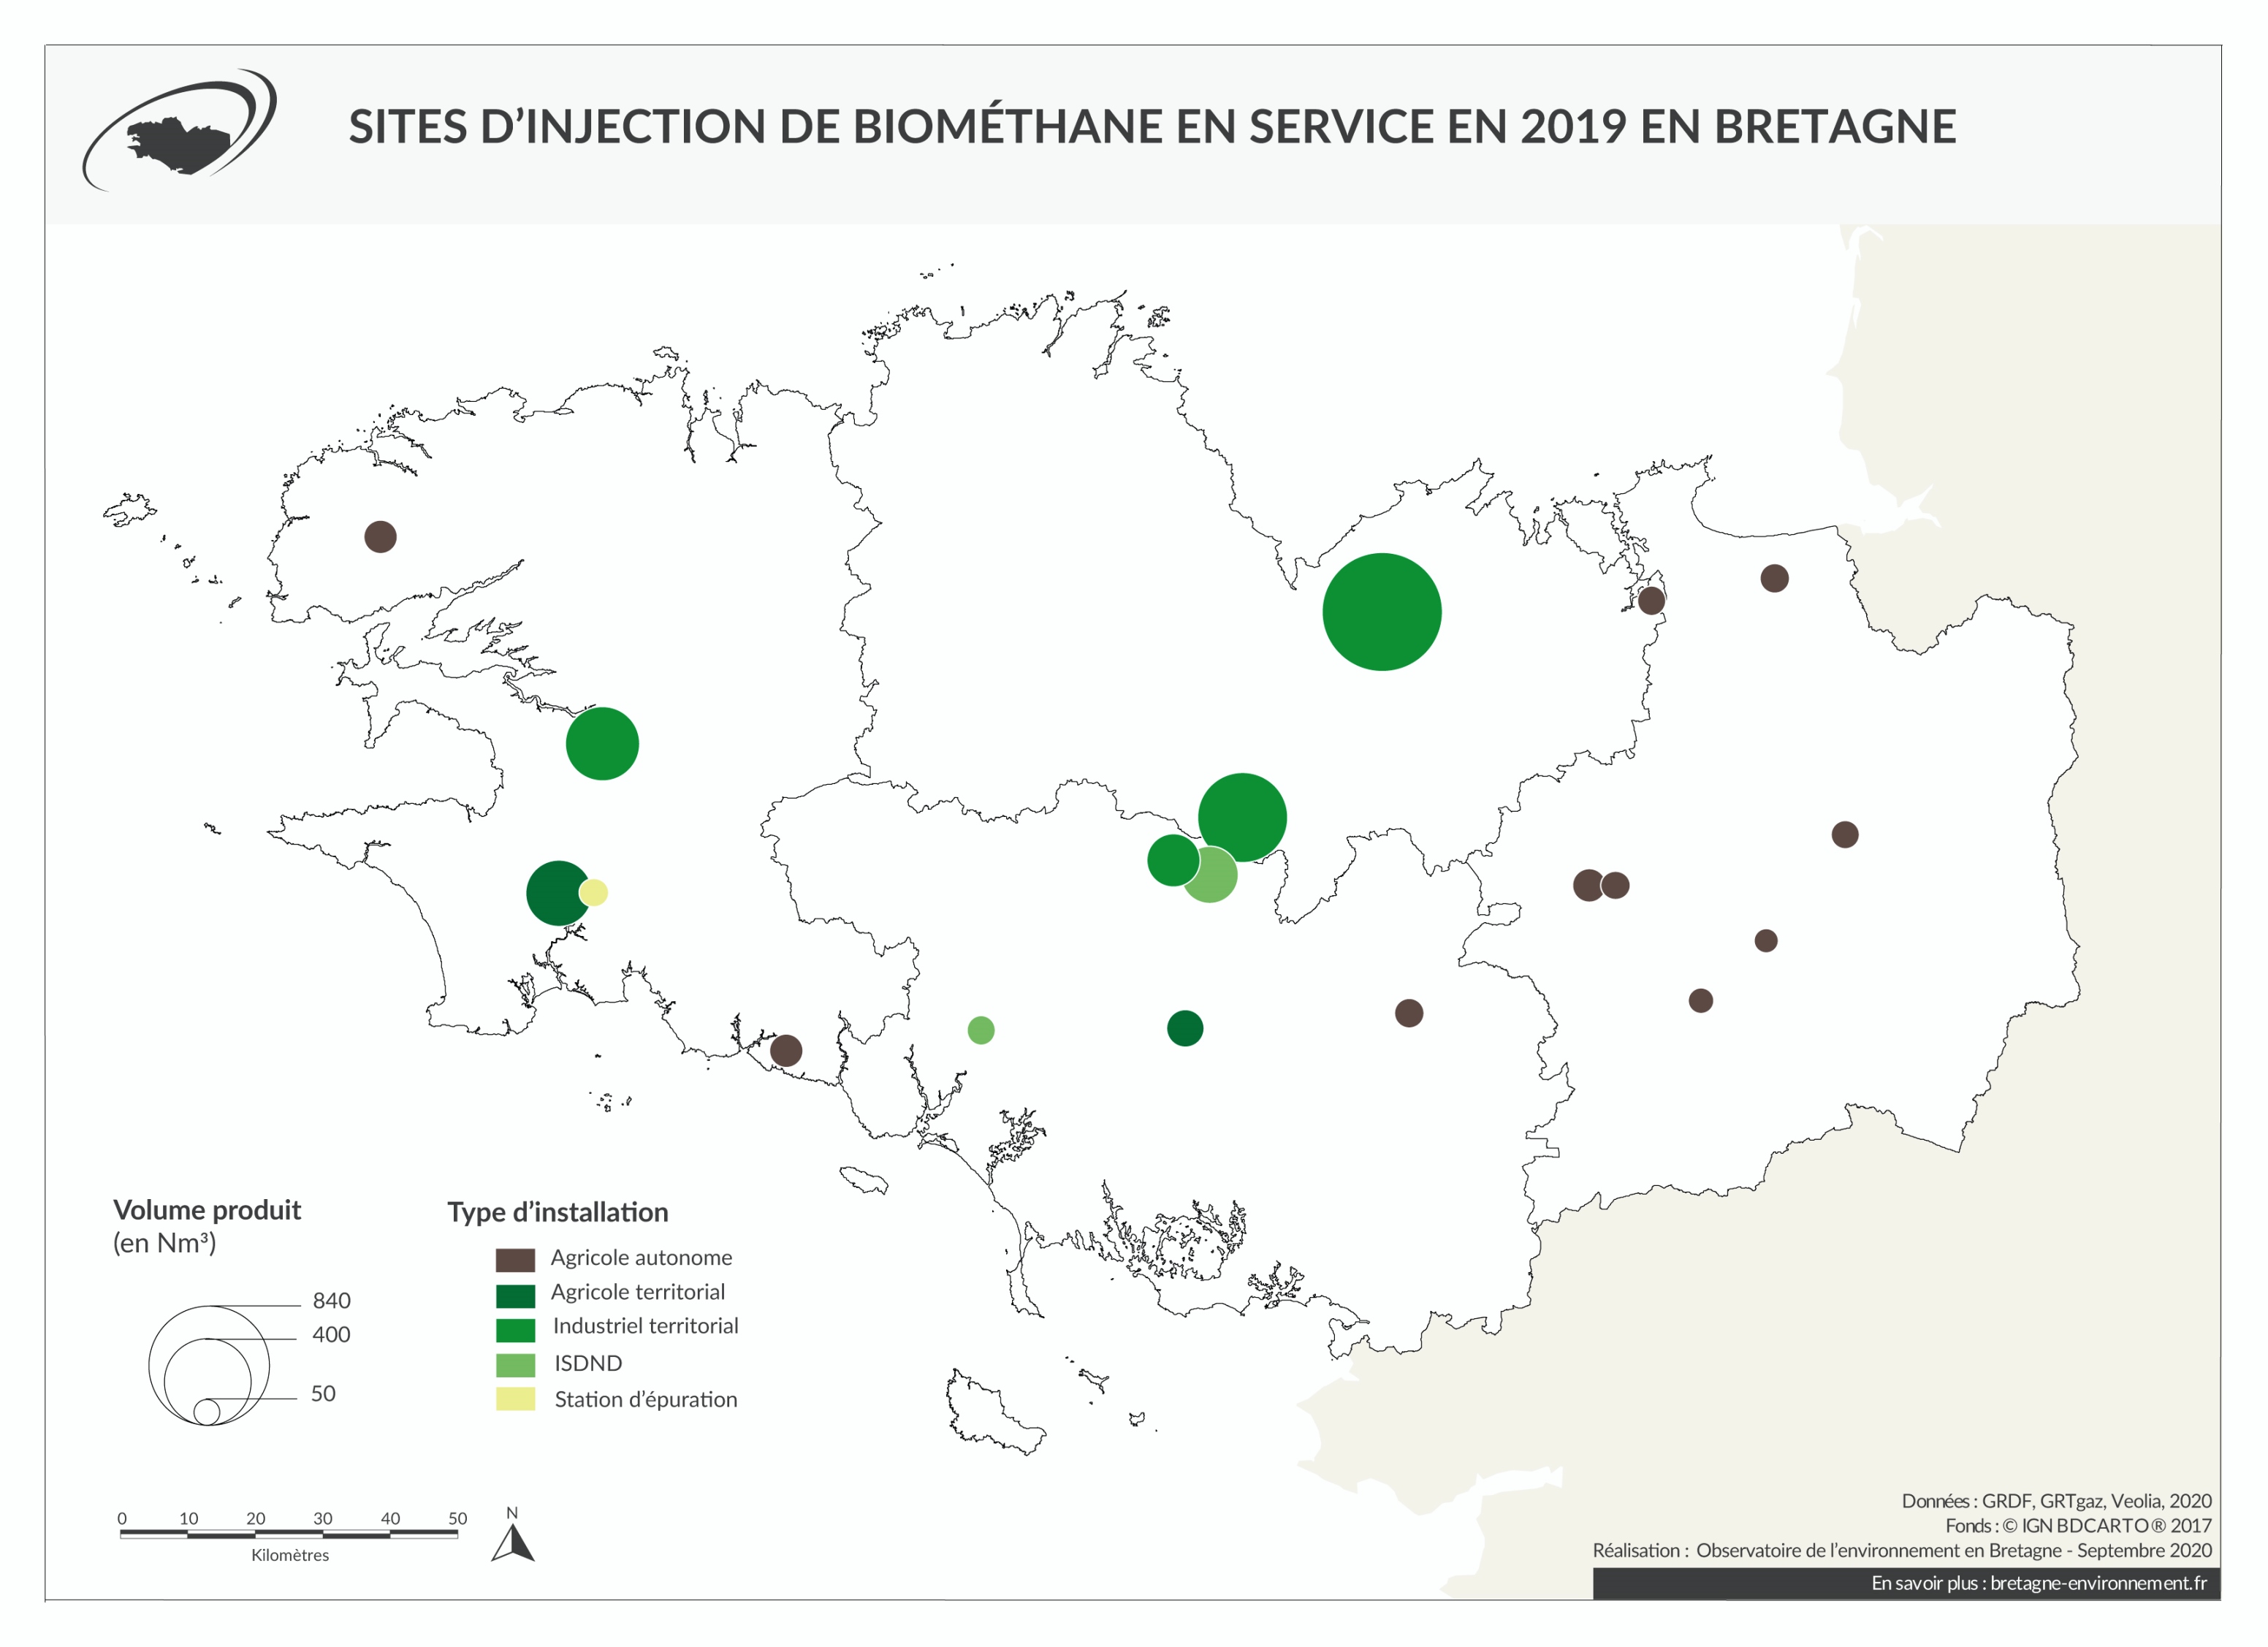 Sites d'injection de biométhane en service en 2019